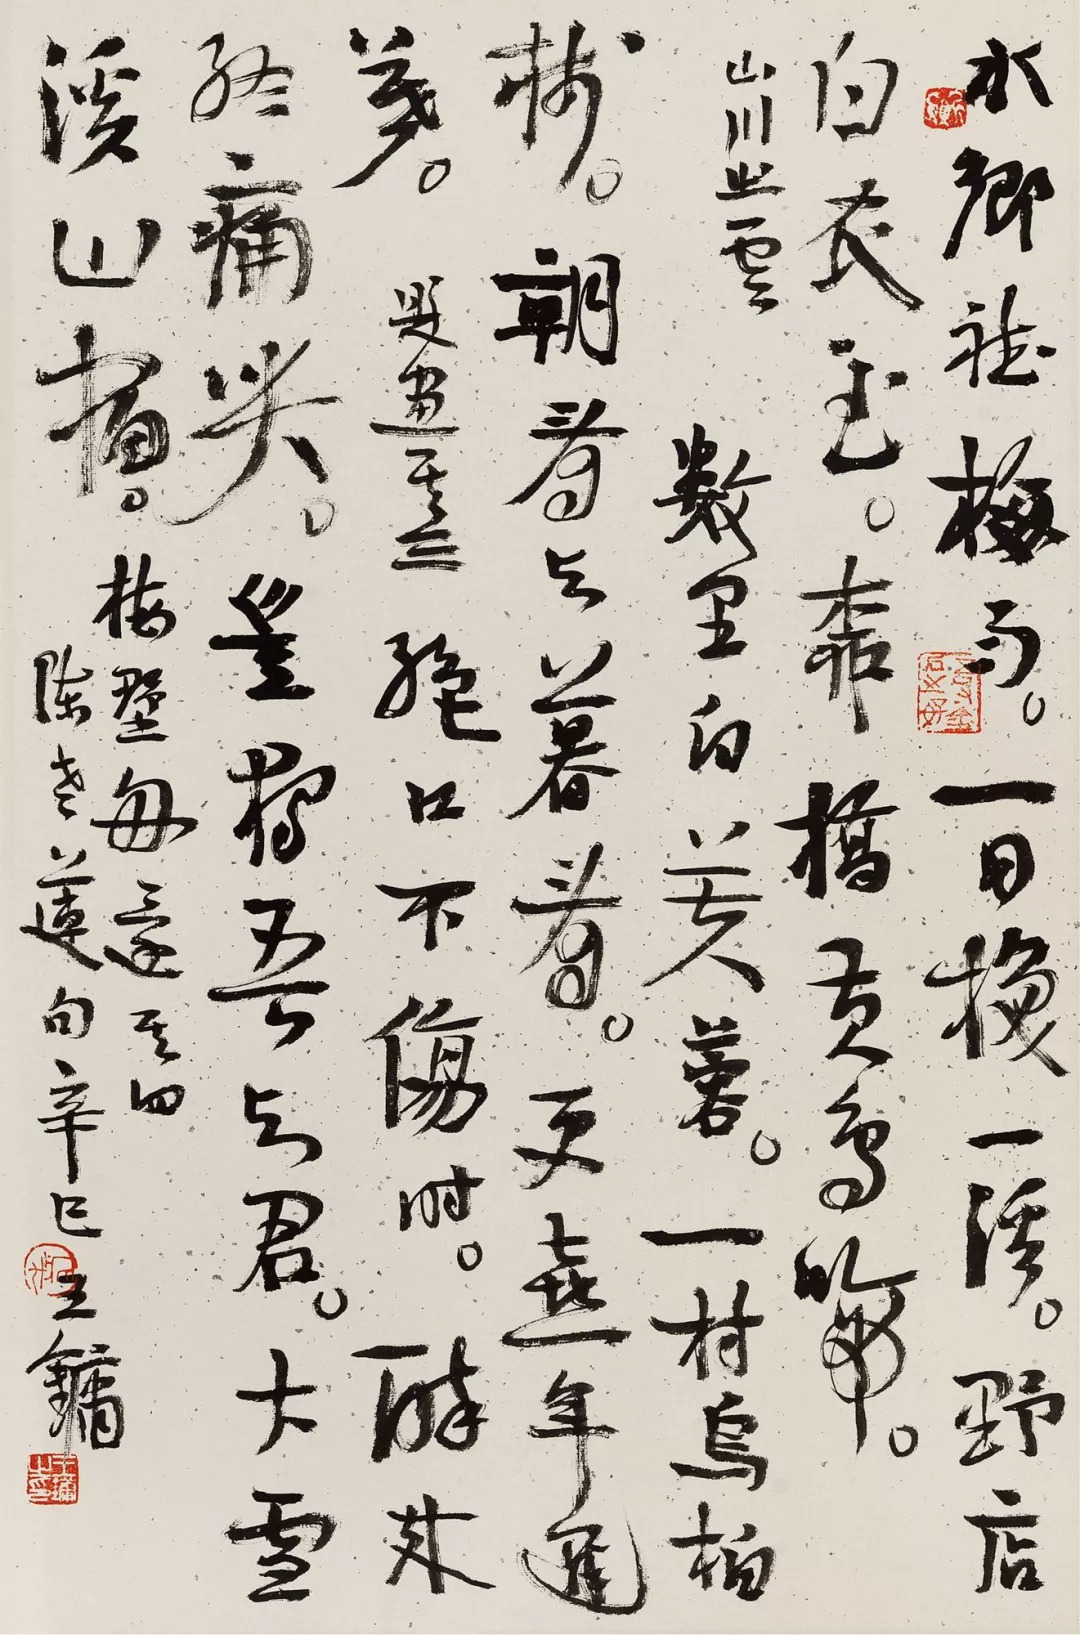 王镛早期书法图片